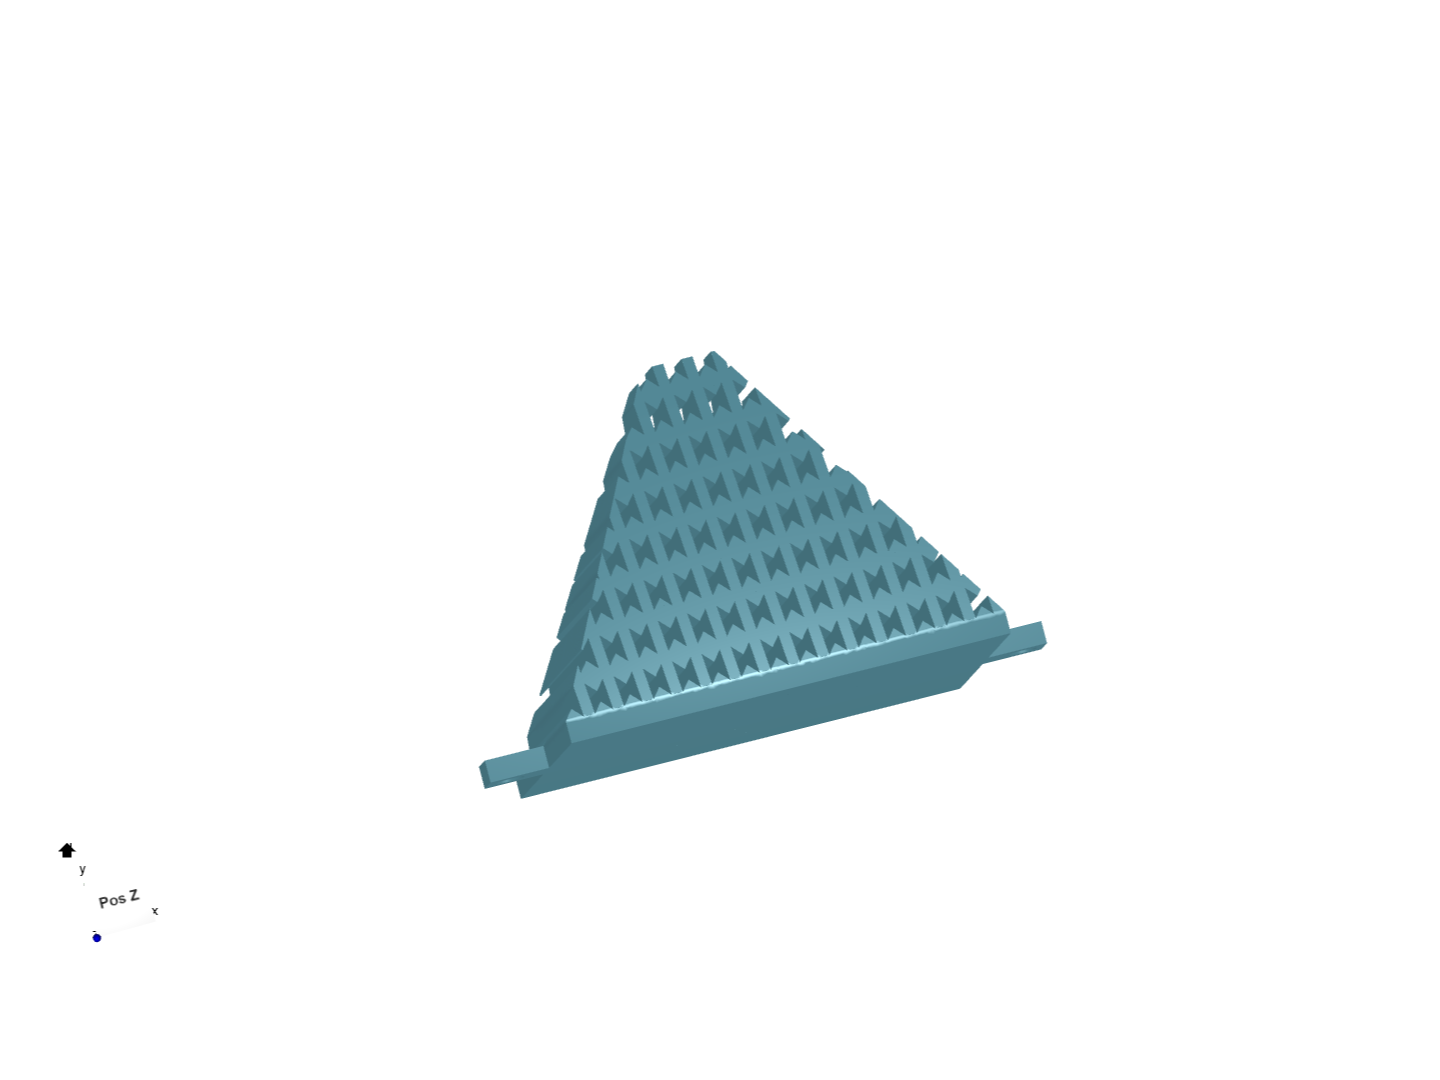 preosnik piramida image